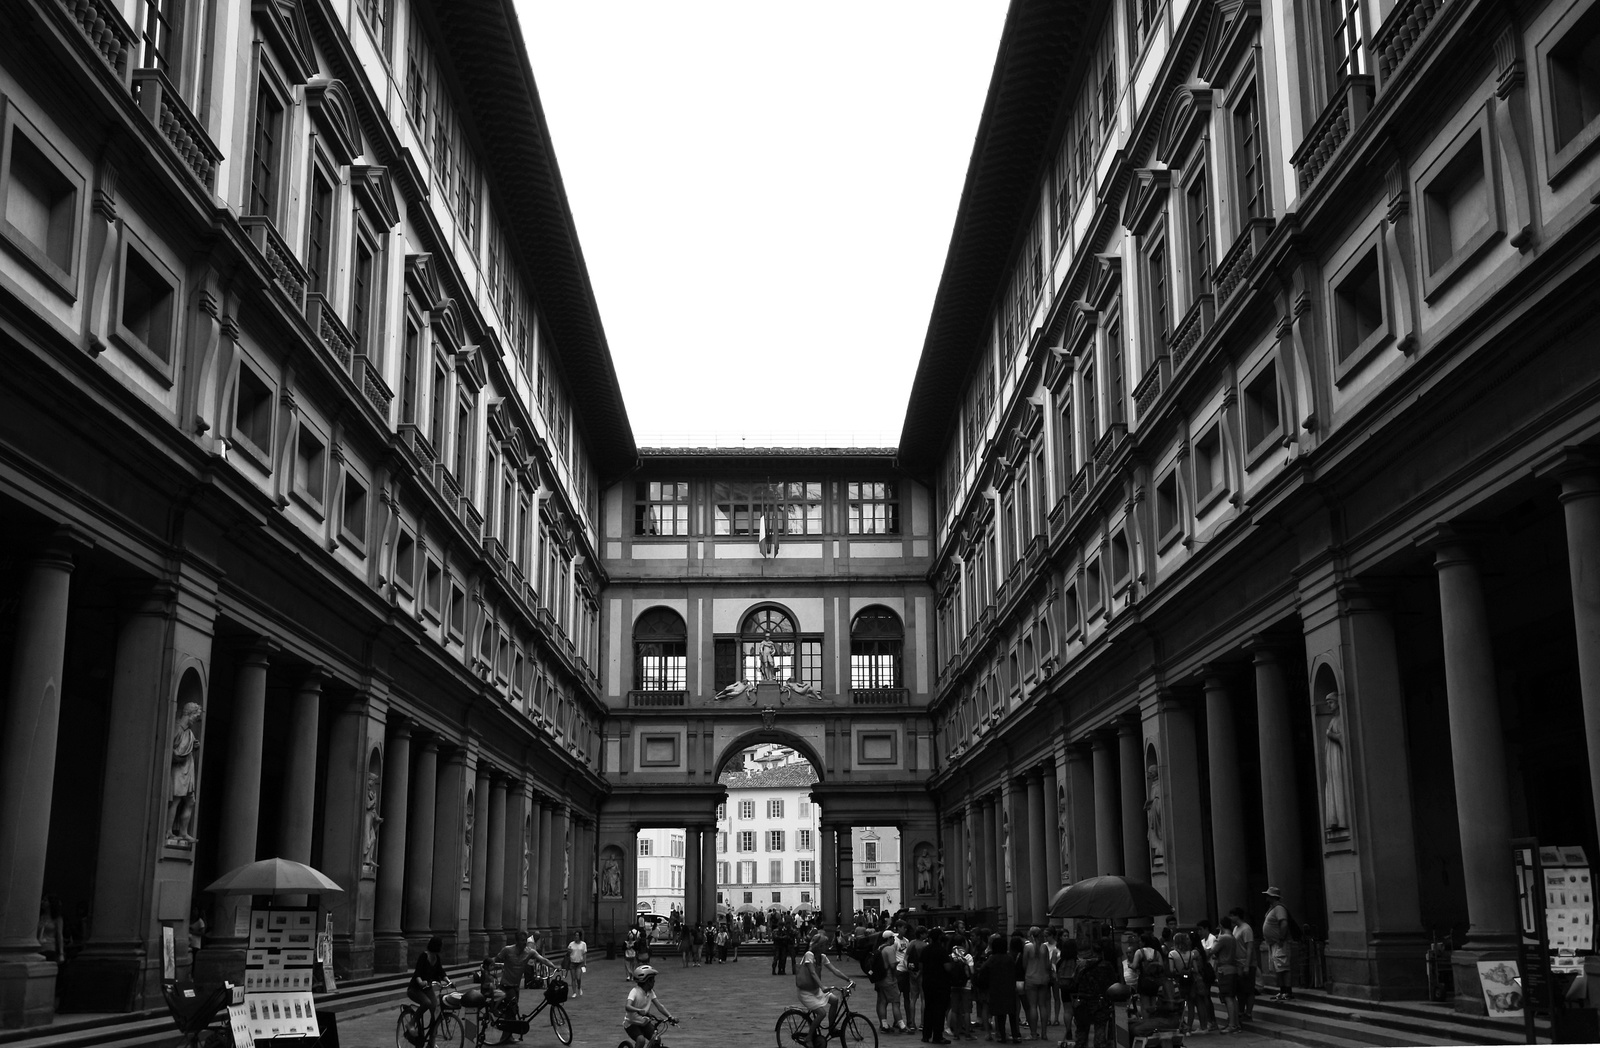 Uffizi képtár